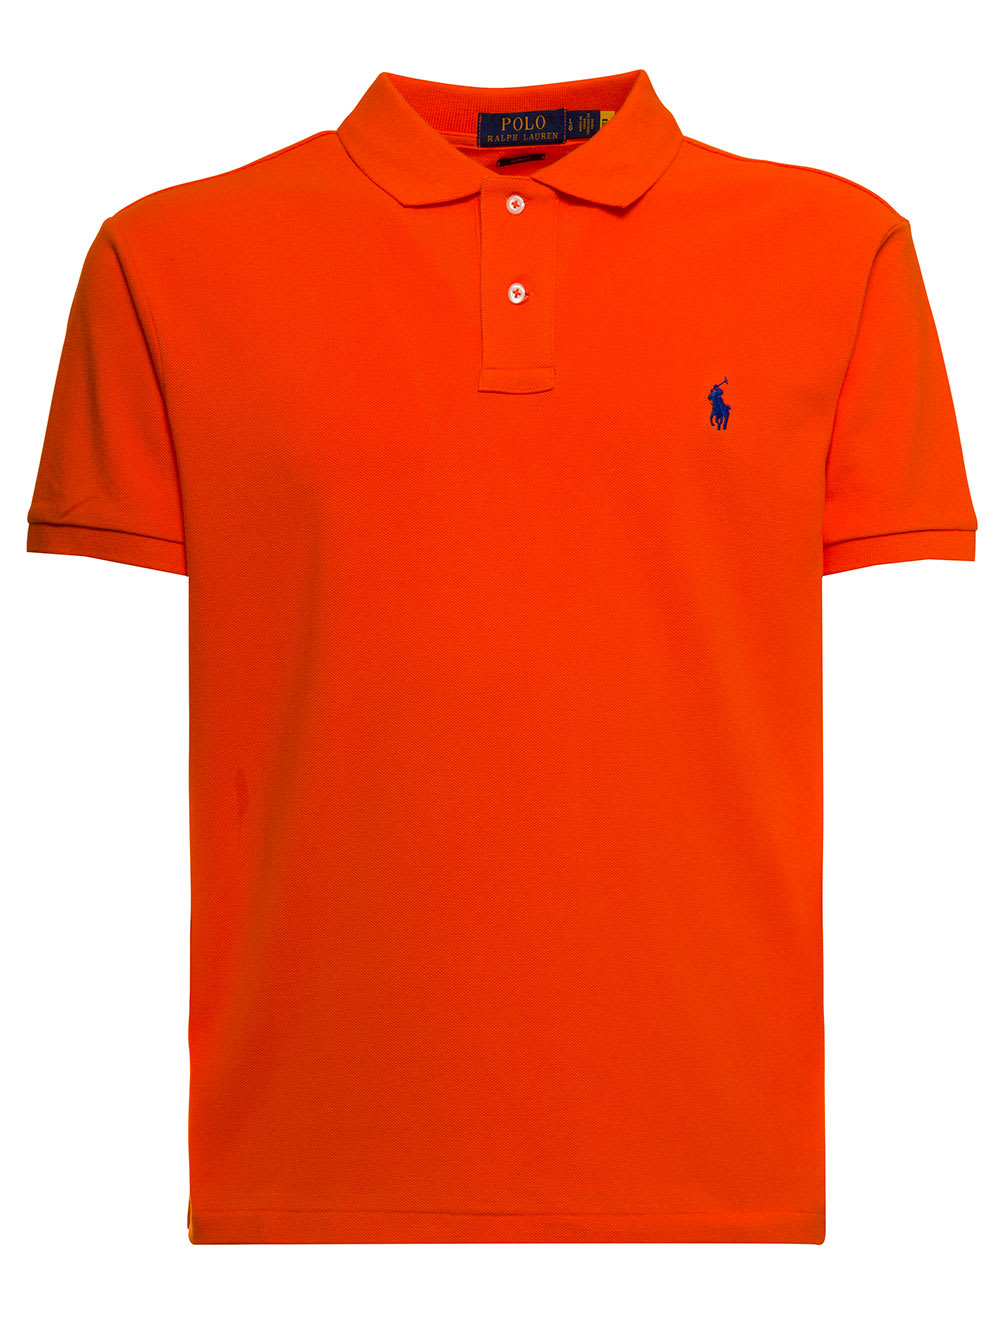 Polo Ralph Lauren Man Orange Cotton Piquet Polo Shirt With Logo